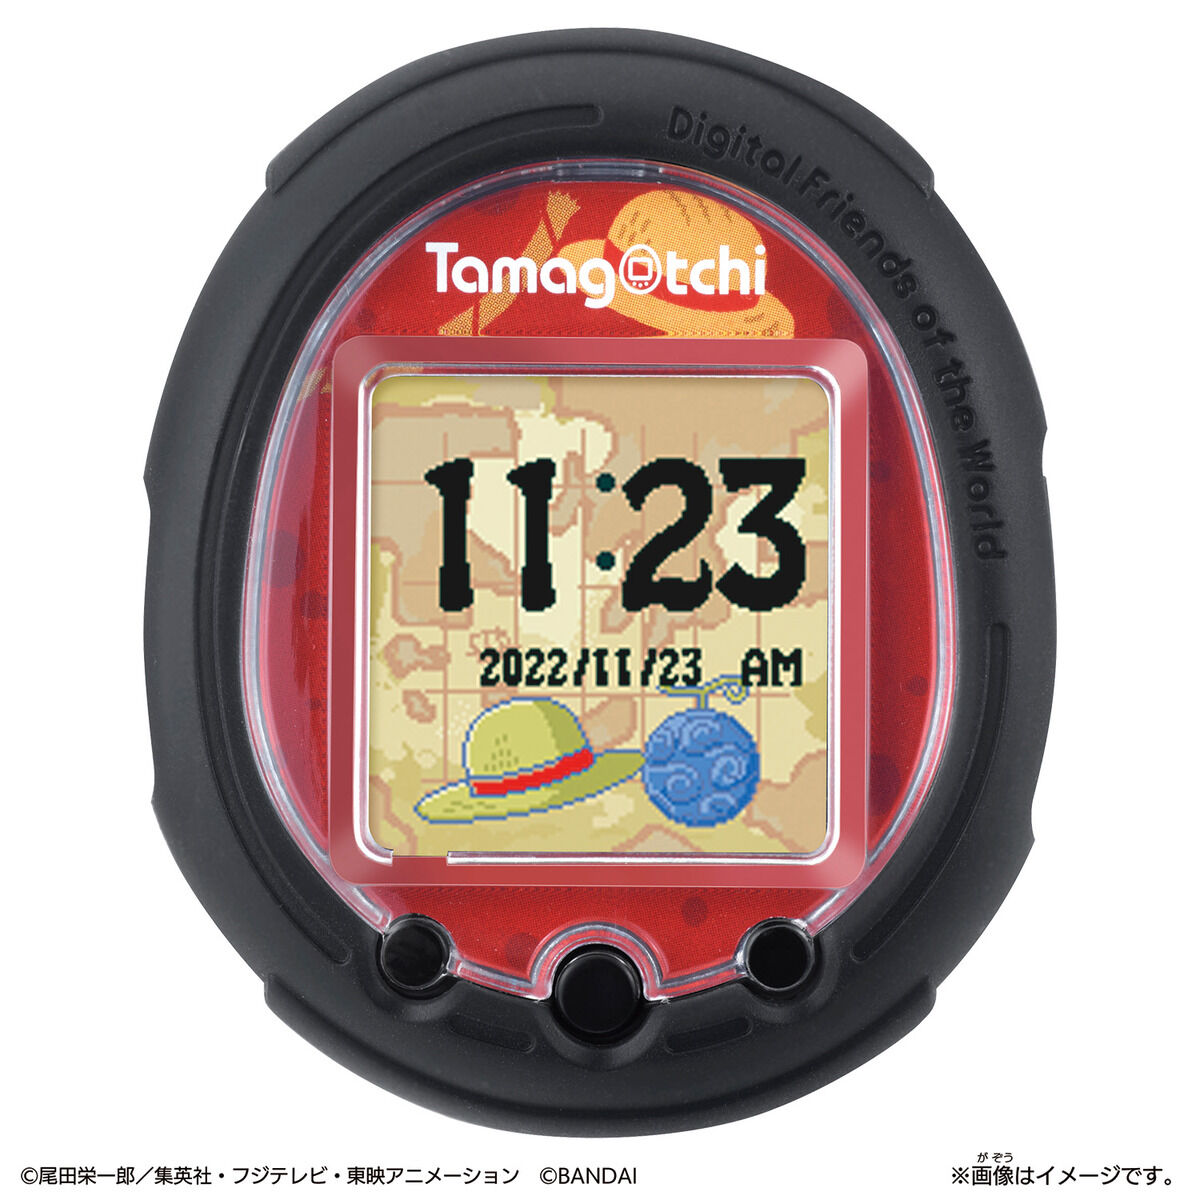 たまごっち Tamagotchi Smart ワンピーススペシャルセット　２個